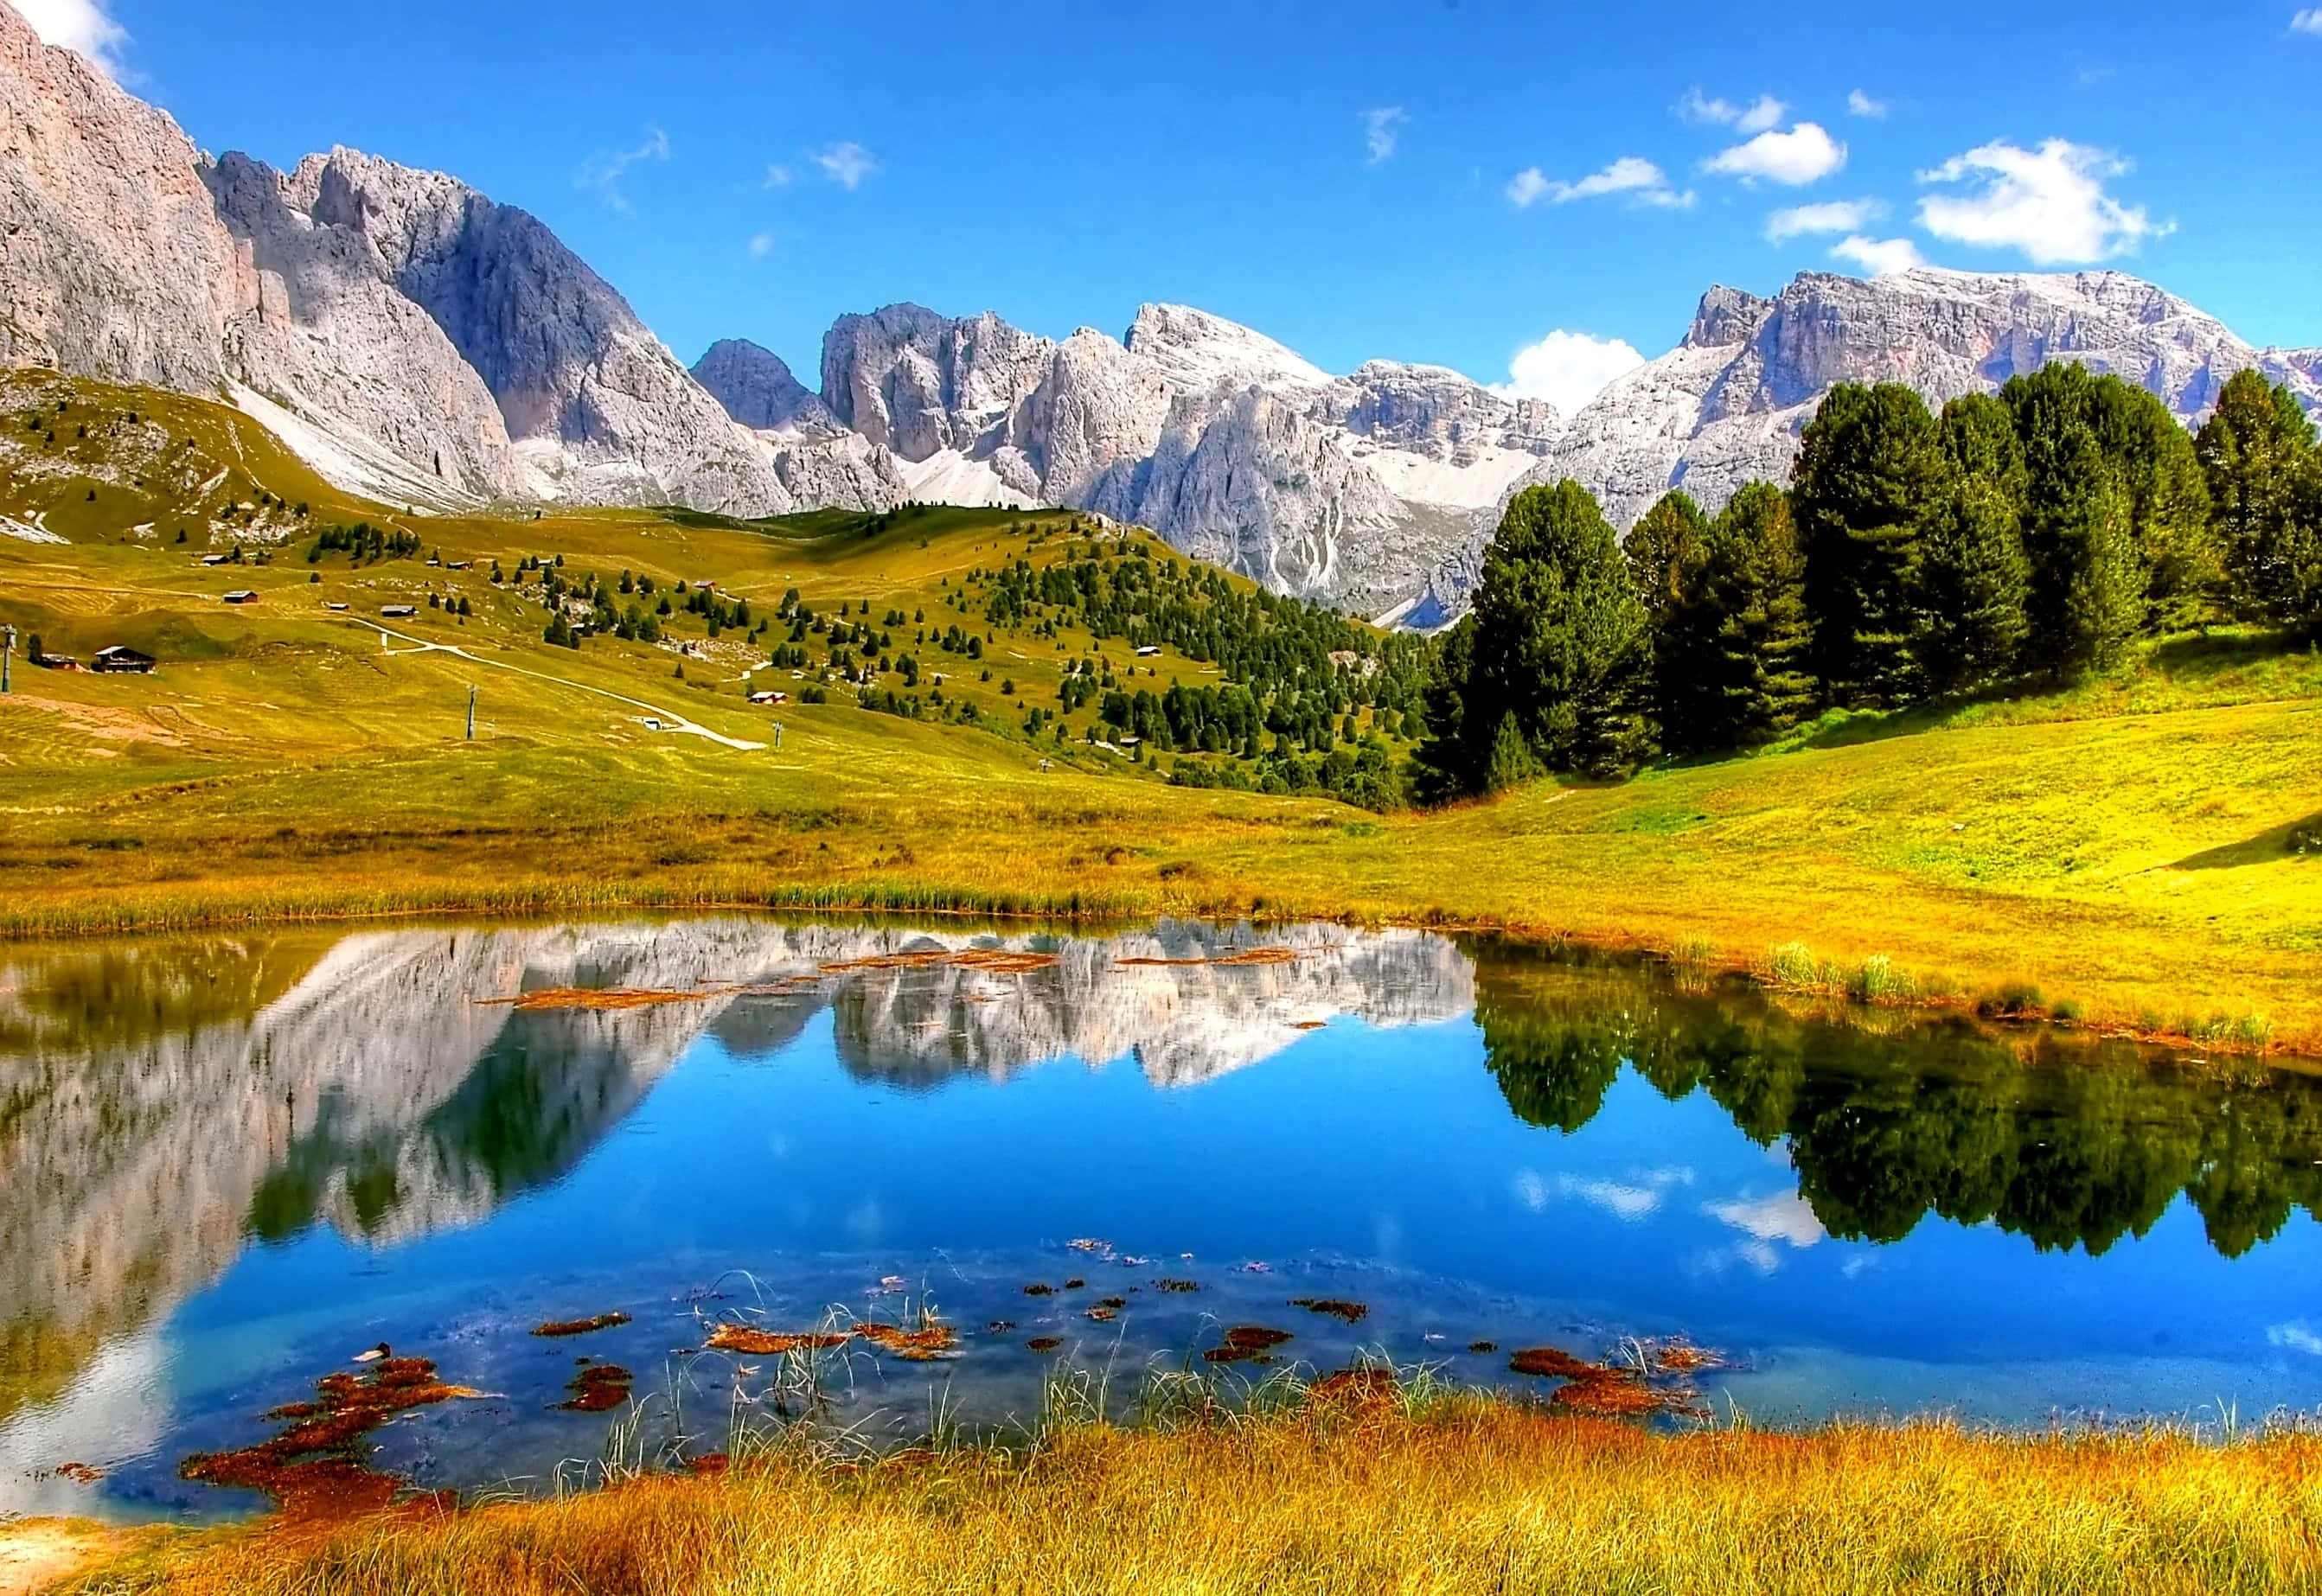 Bestaunedie Wunderschönen Berge Einer Coolen Landschaft Wallpaper